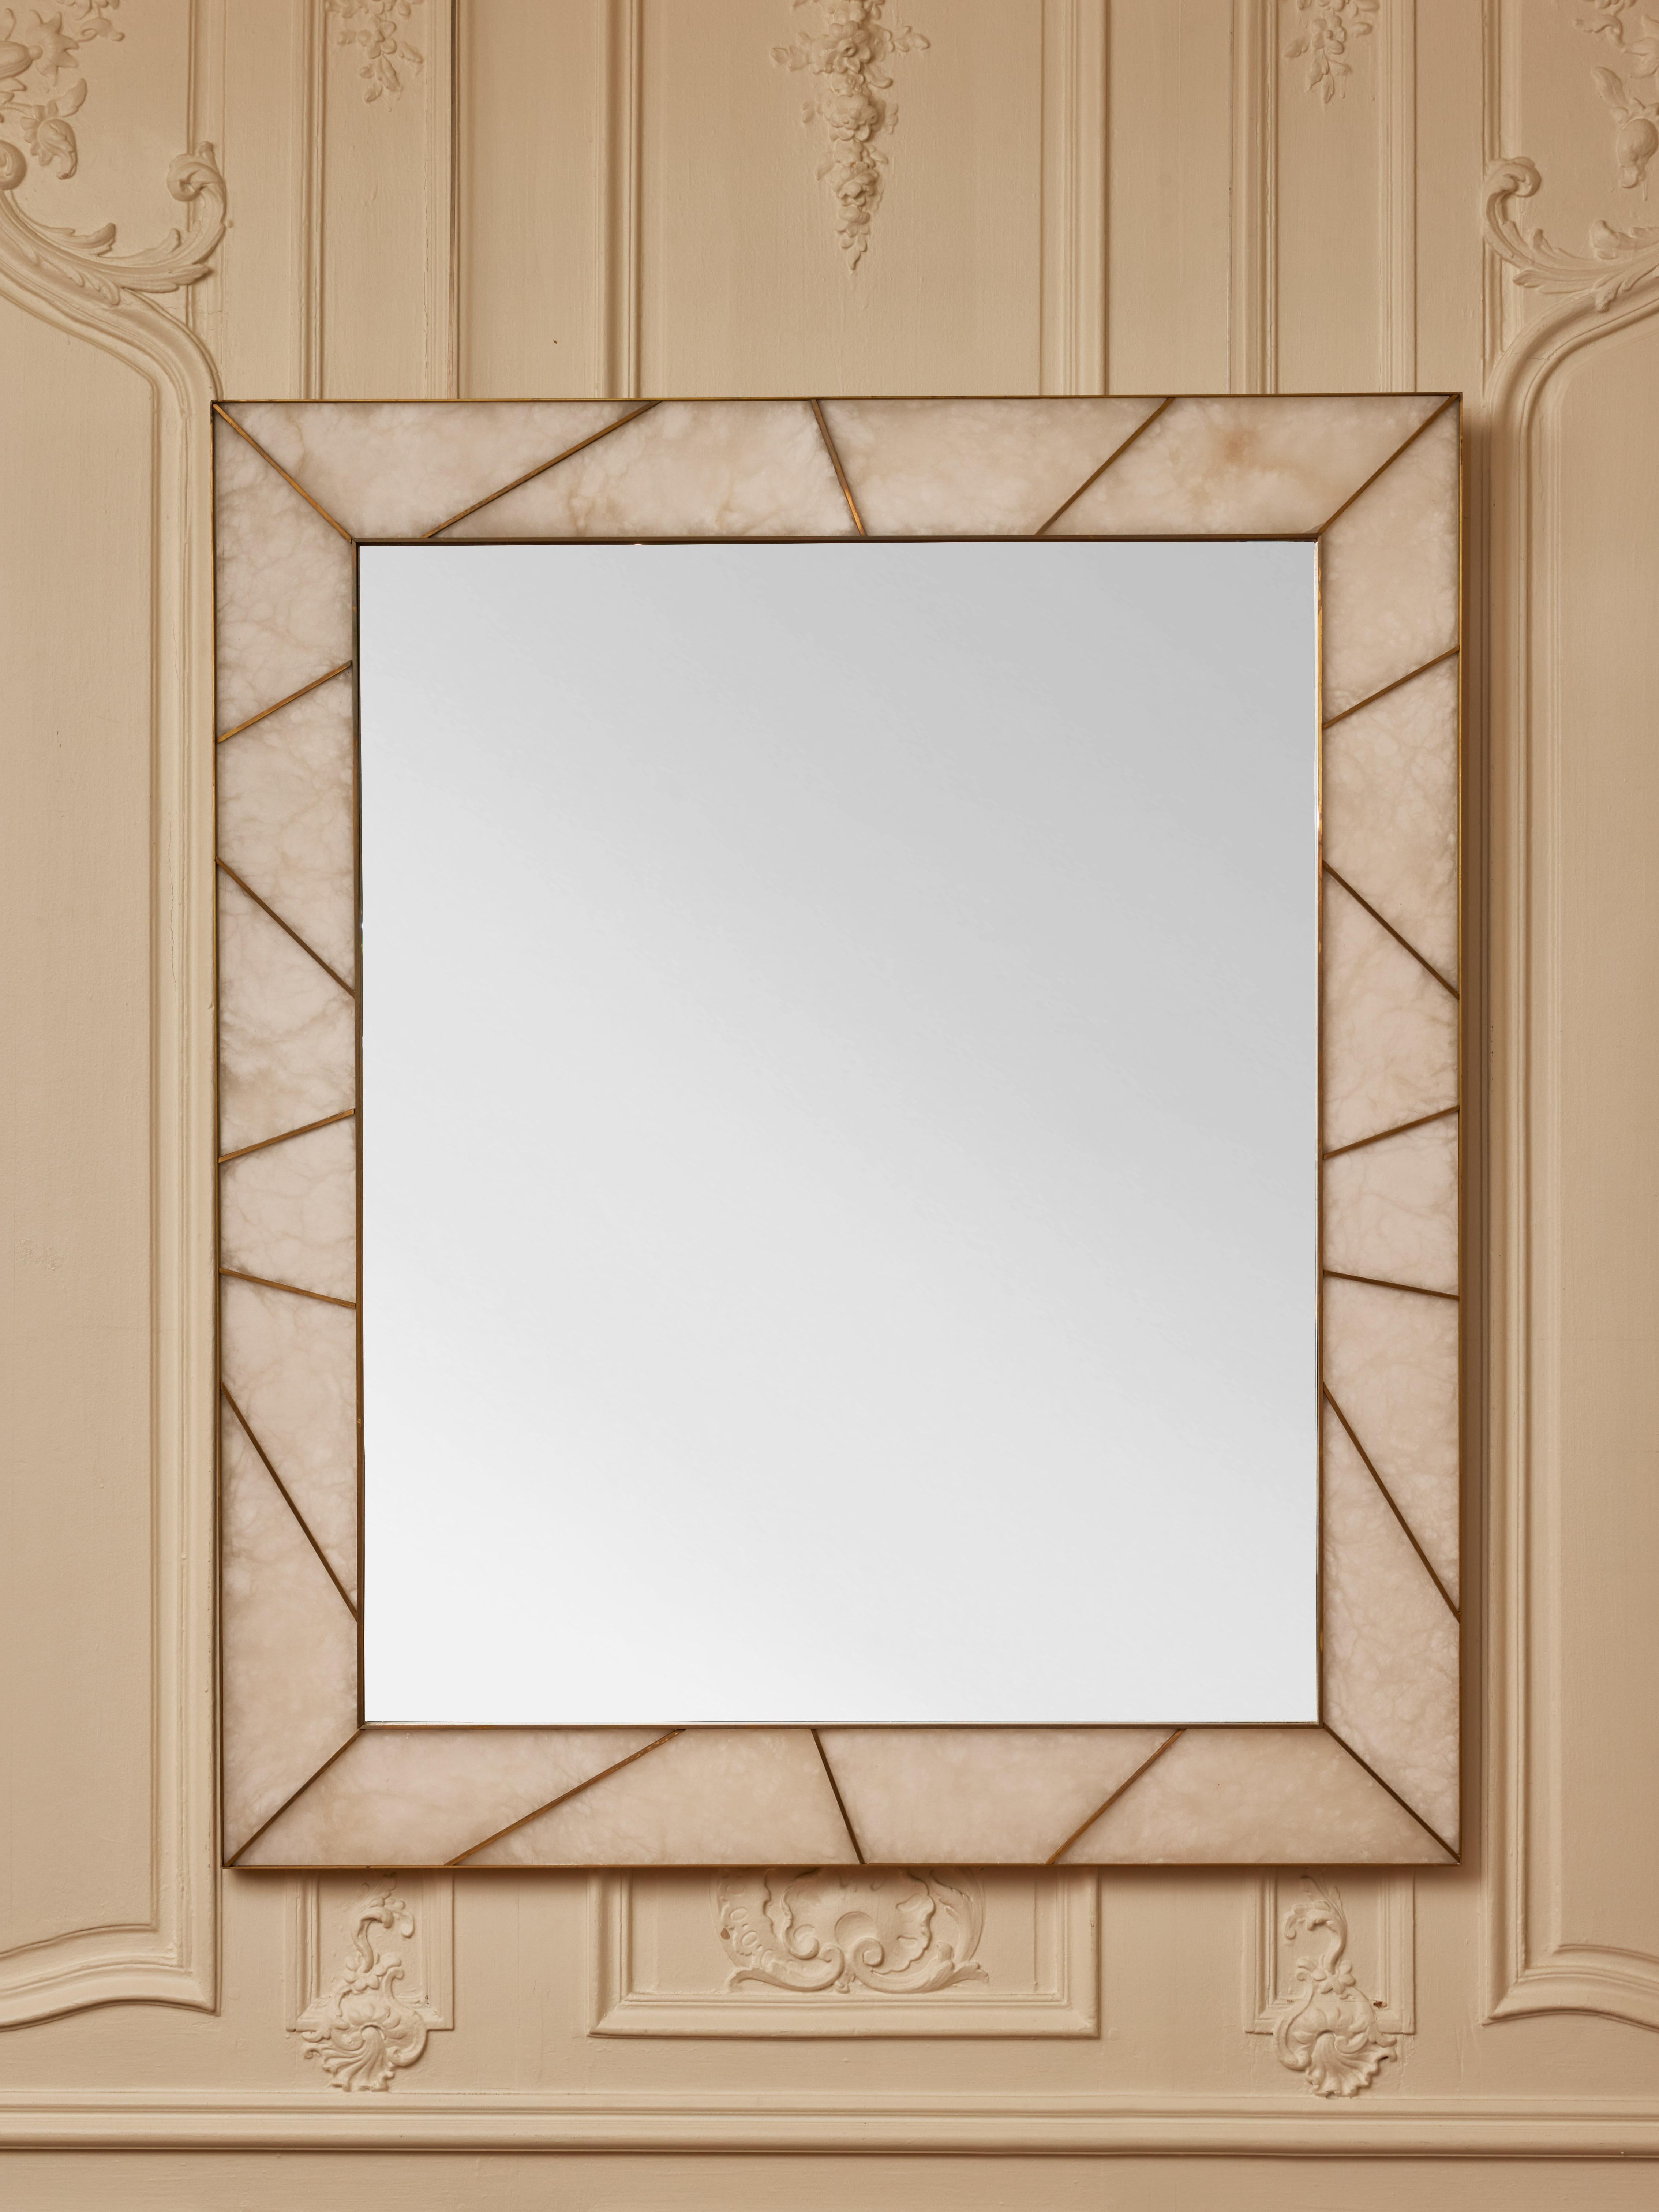 Important miroir encadré d'incrustations d'albâtre et de laiton.
Création par le Studio Glustin.